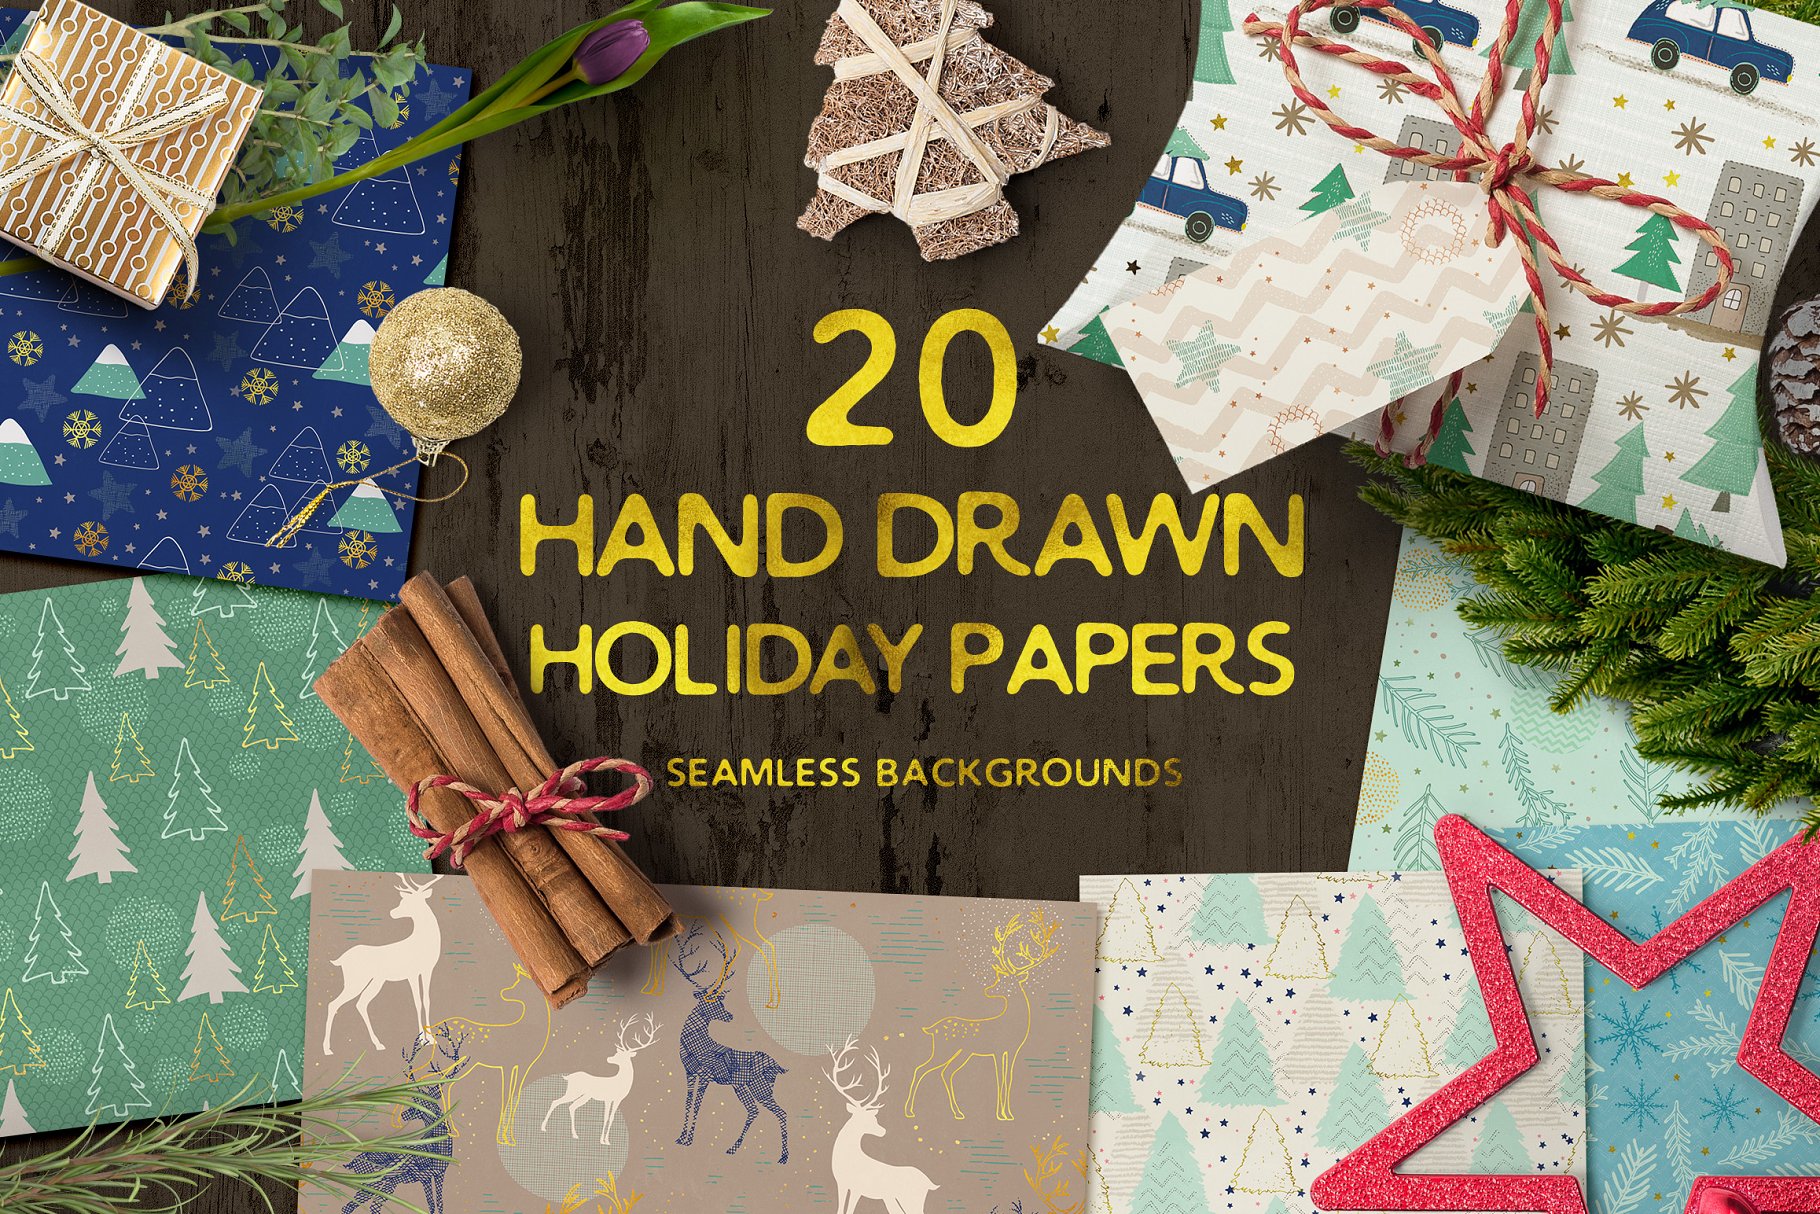 手绘节日元素图案纹理集 Hand drawn seamless holiday papers插图